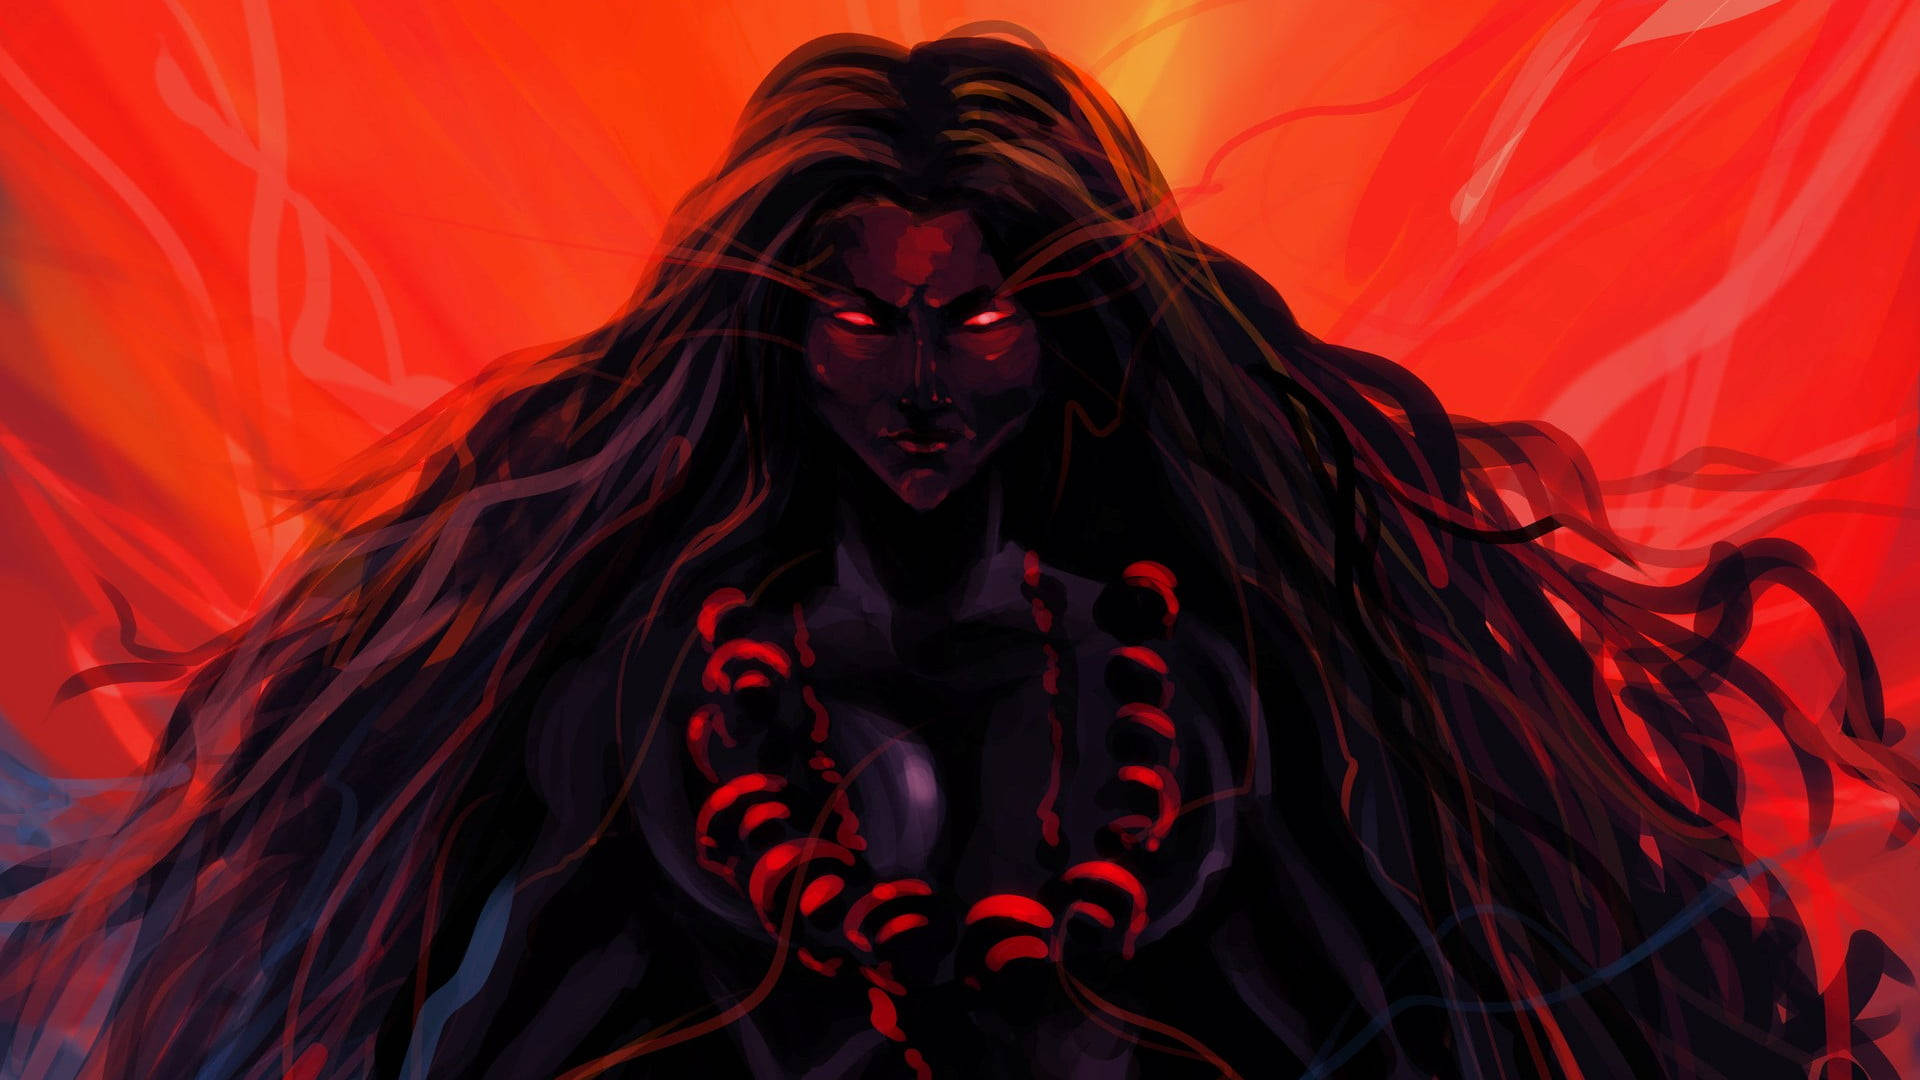 Hindu Goddess Kali Dark Illustration Wallpaper